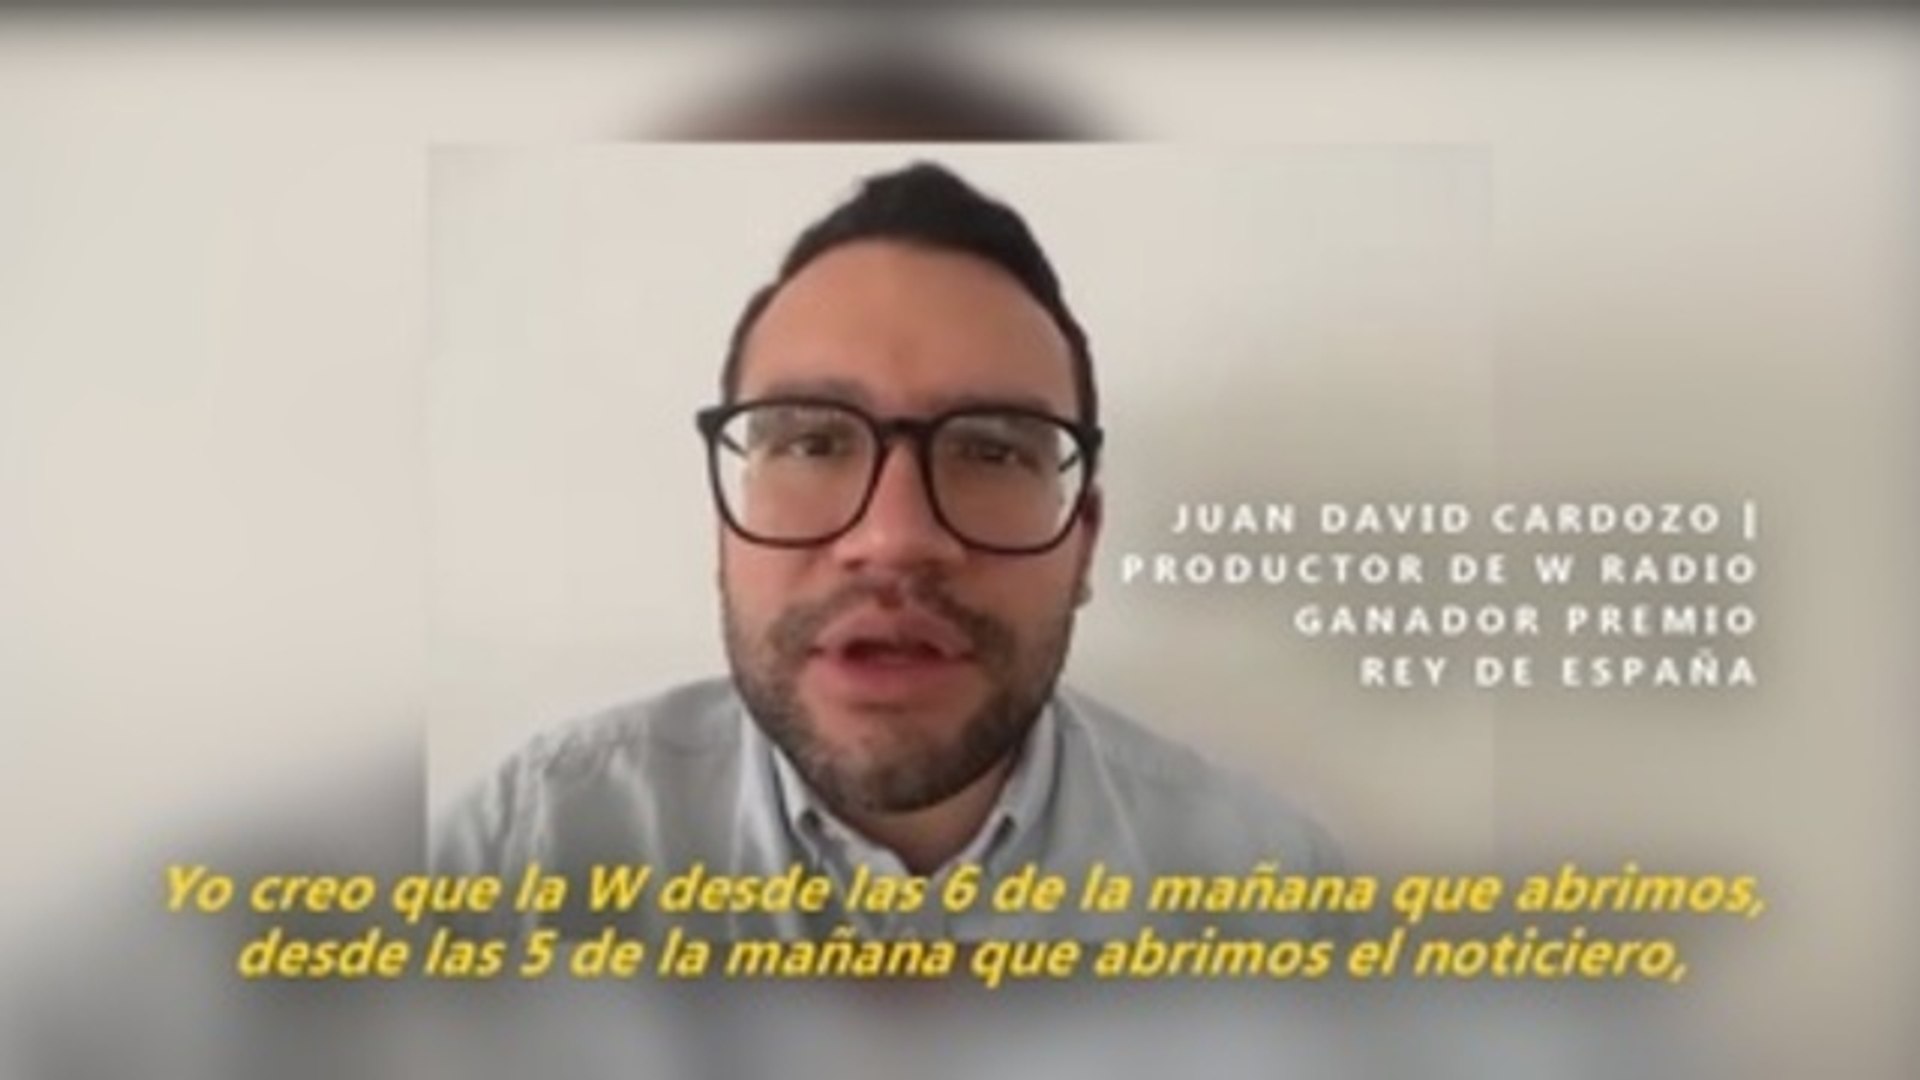 W Radio Colombia gana Premio Rey de España gracias al trabajo en equipo -  Vídeo Dailymotion